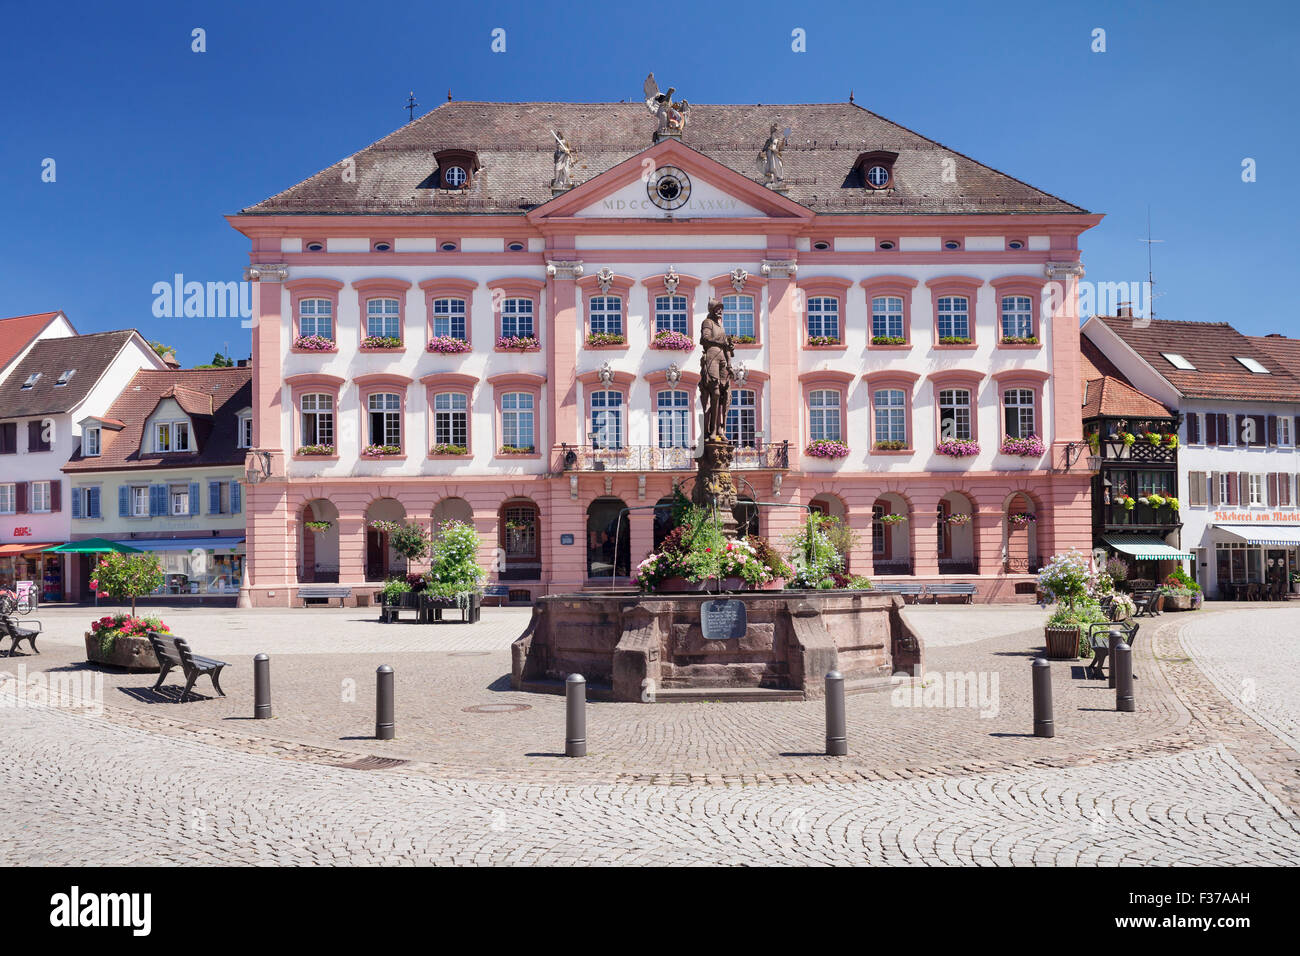 Hôtel de ville, fontaine Röhrbrunnen le marché, Gengenbach, Kinzigtal, Forêt-Noire, Bade-Wurtemberg, Allemagne Banque D'Images